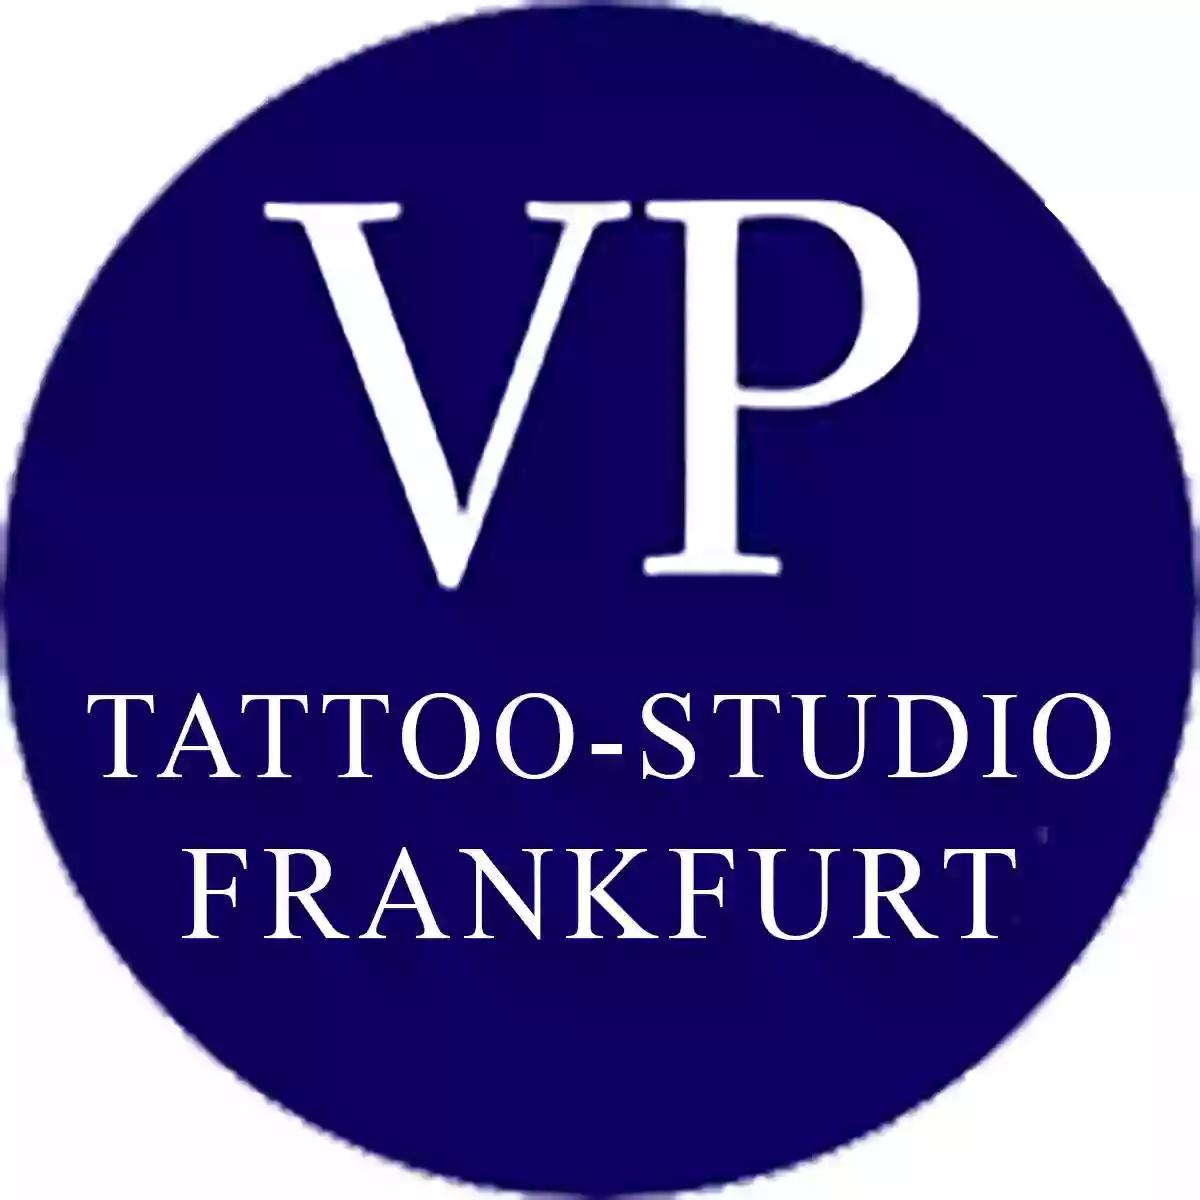 Tattoo Studio Frankfurt - The Factory